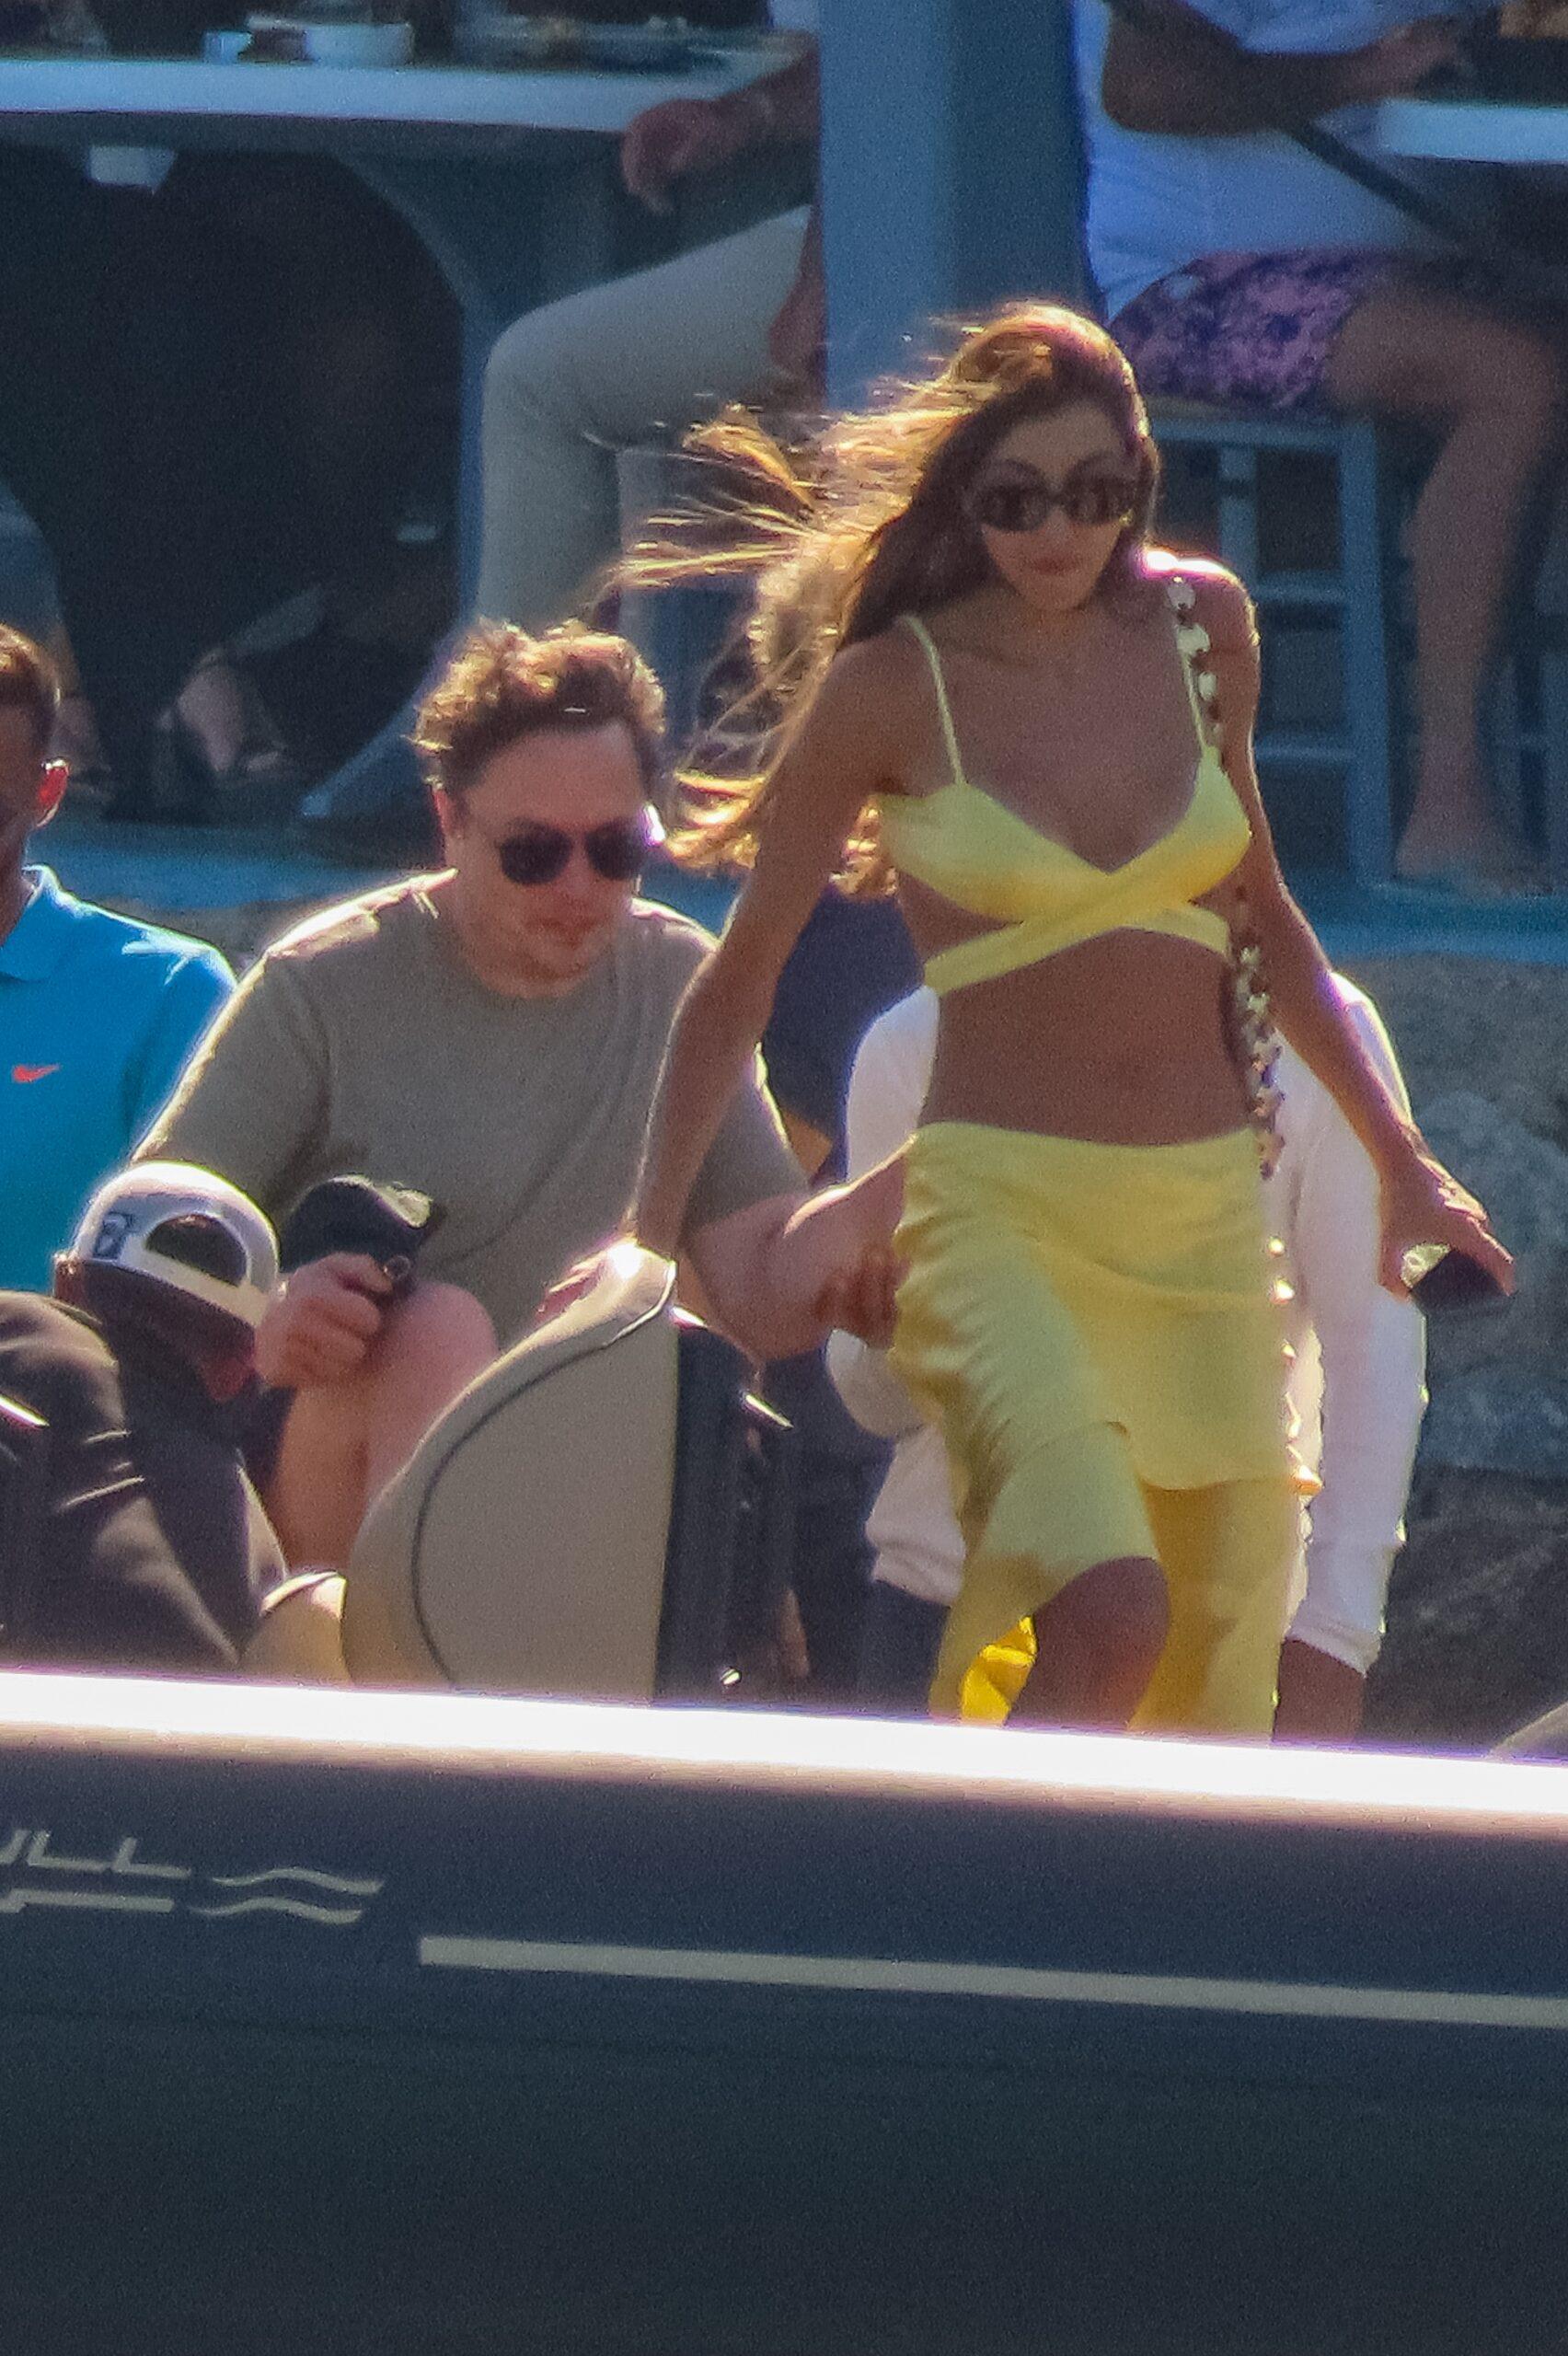 Elon Musk seen with friends on a speedboat in Mykonos, Greece